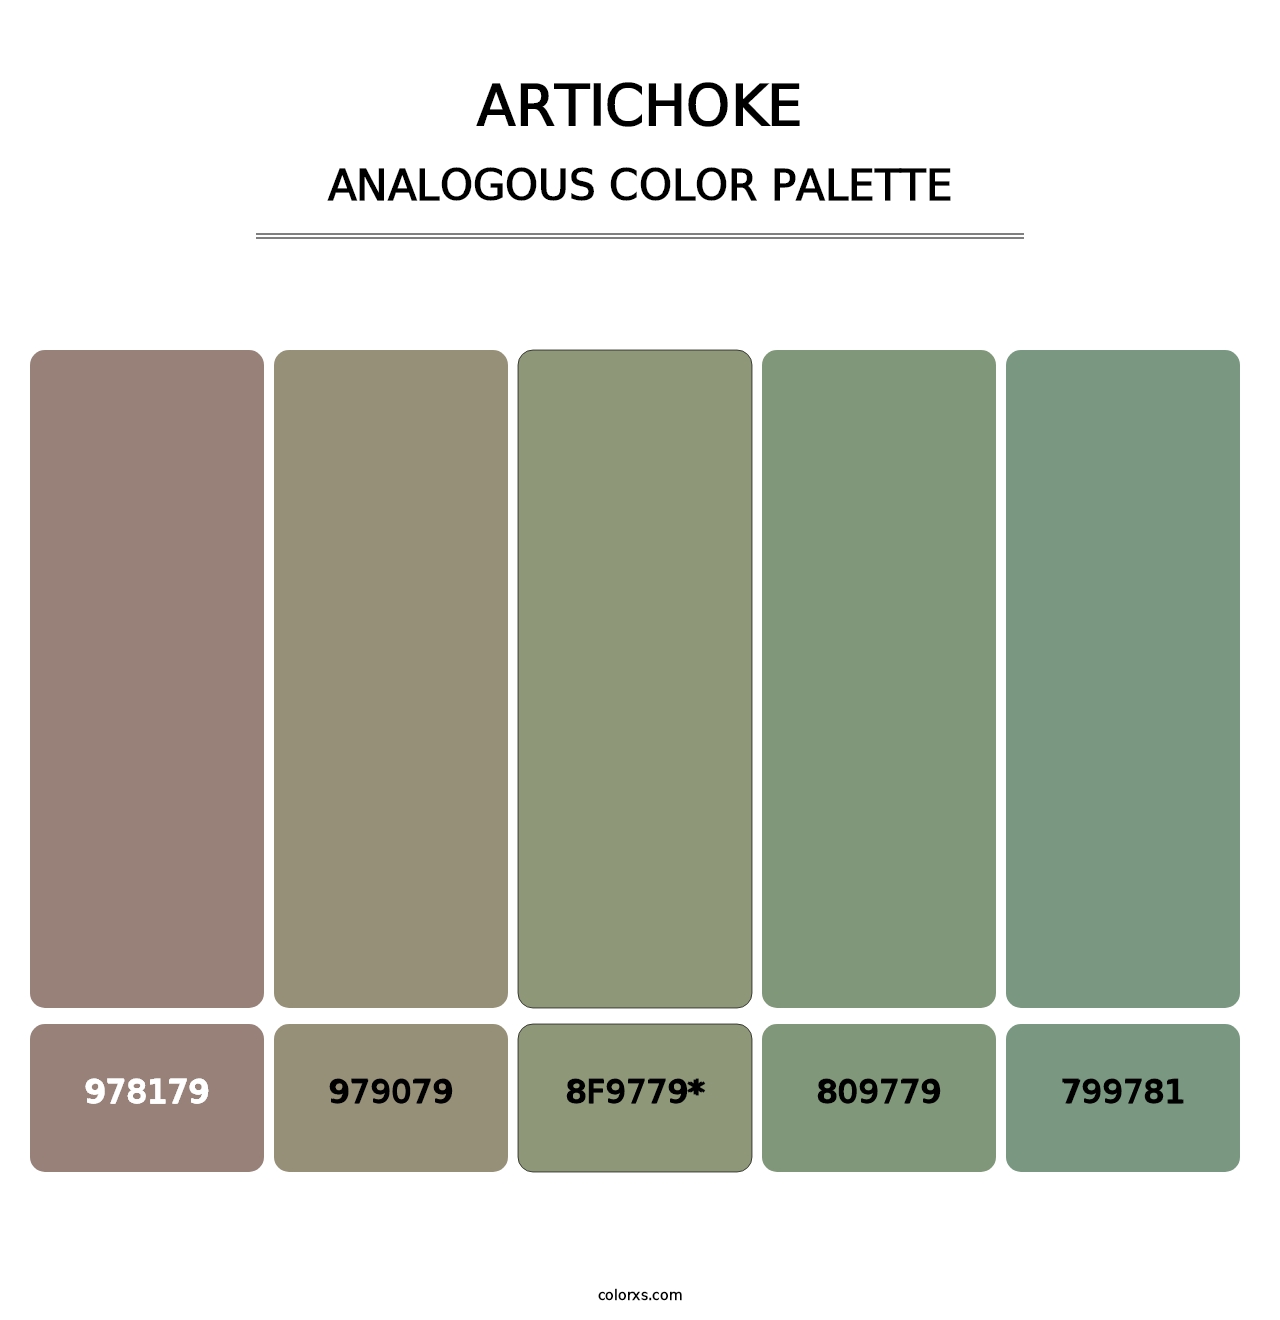 Artichoke - Analogous Color Palette